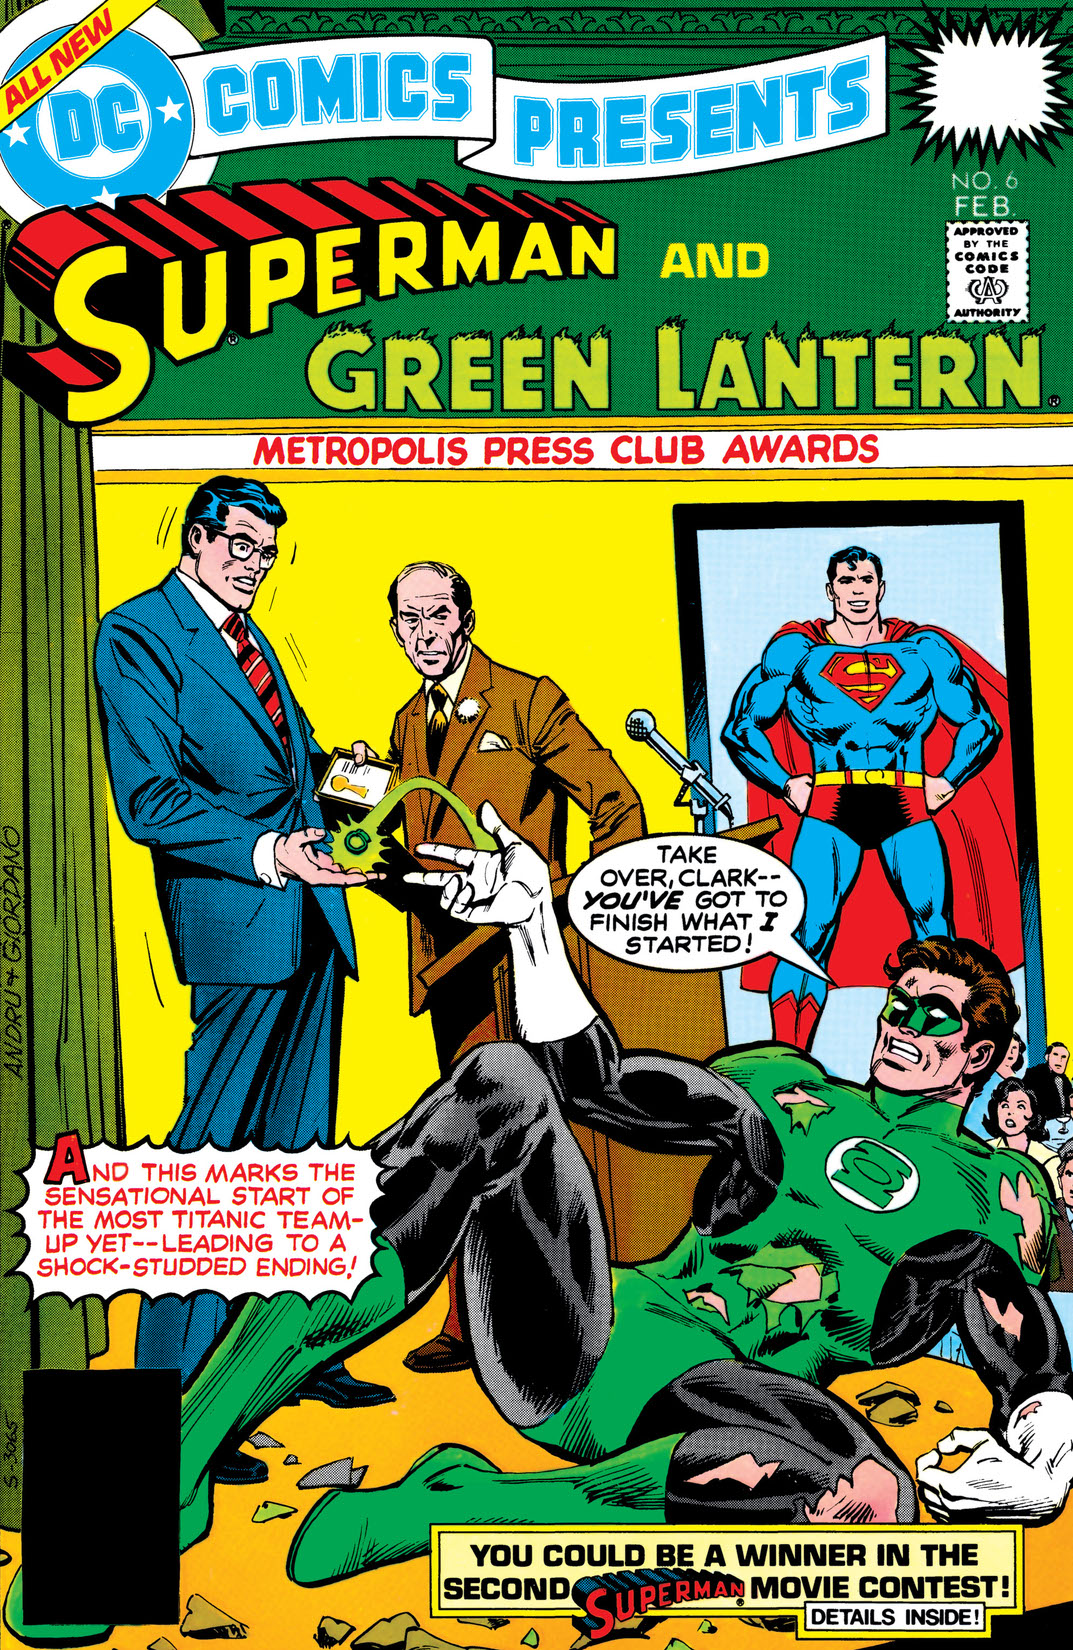 DC Comics Presents (1978-) #6 preview images